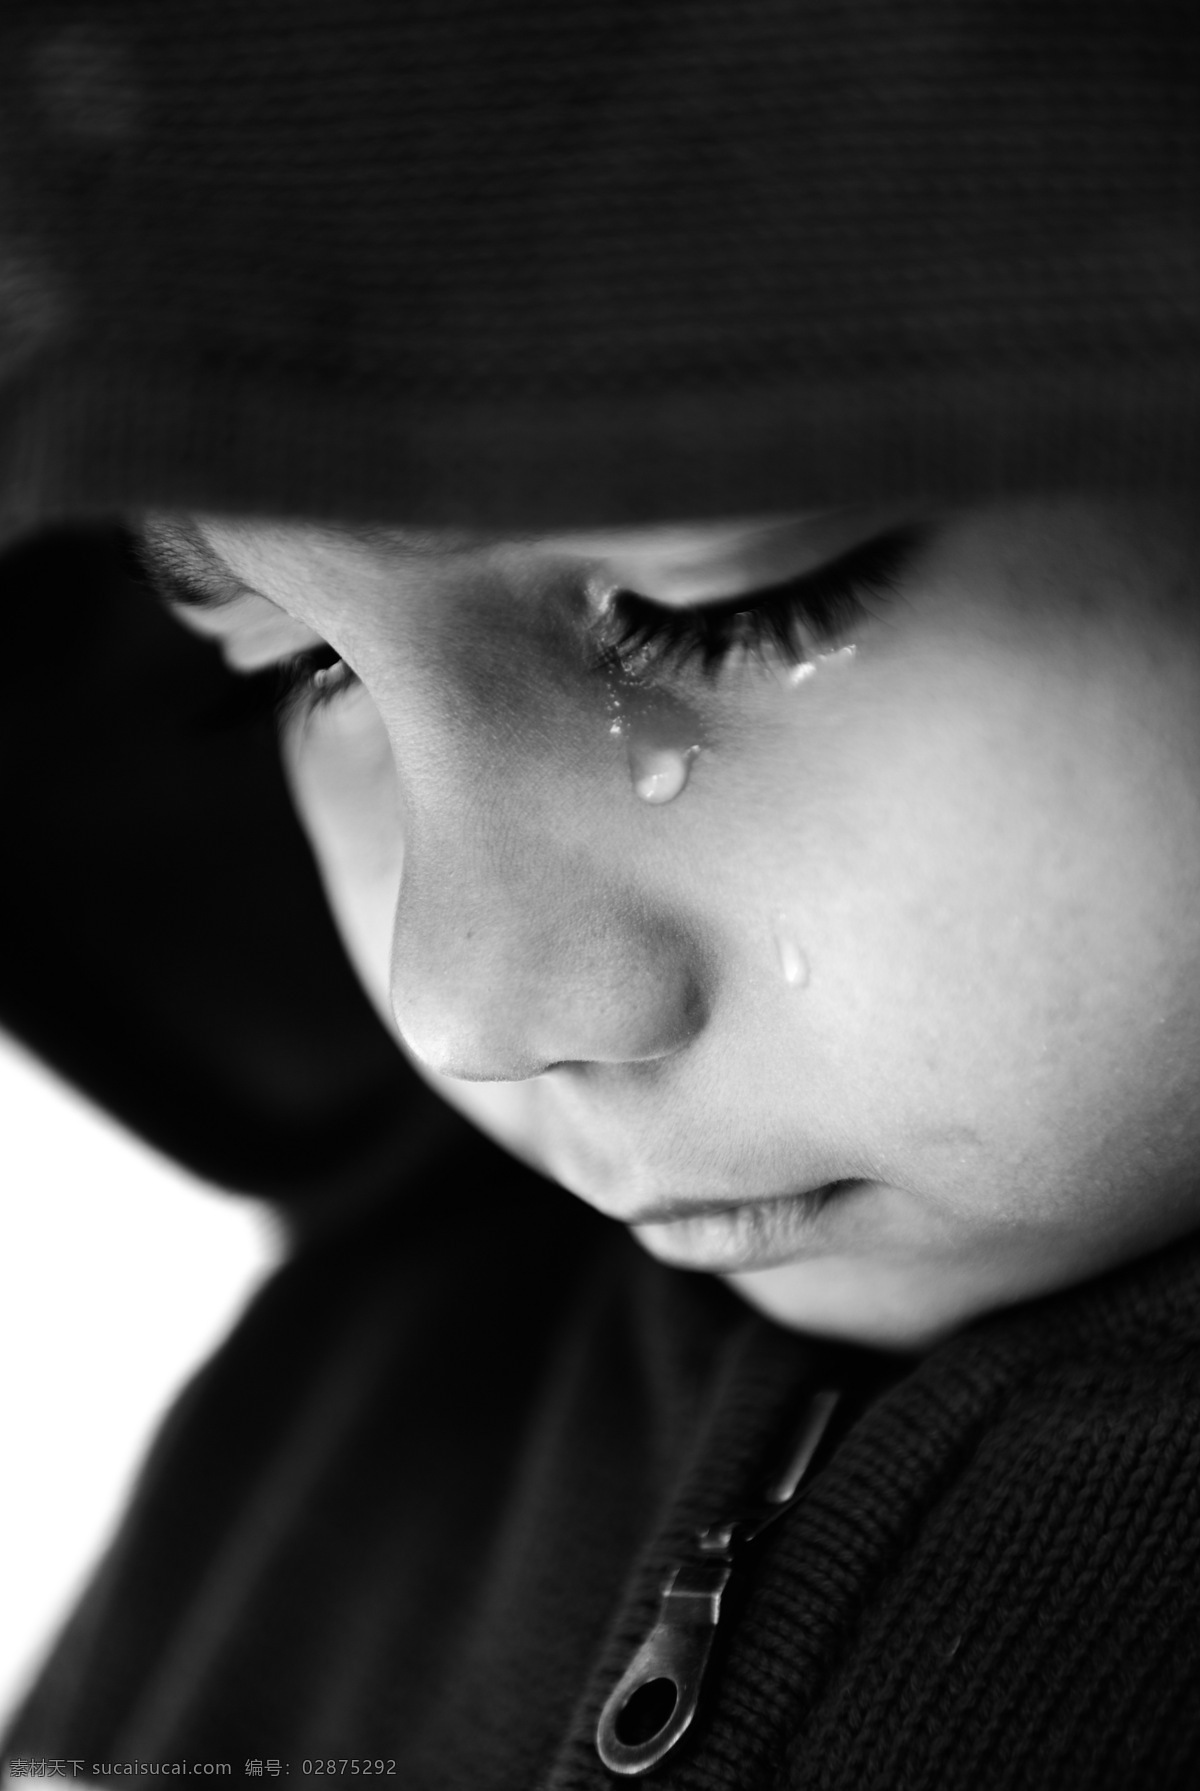 哭泣 男孩 外国儿童 可爱 男生 小学生 悲伤人物 泪水 泪珠 生活人物 人物图片